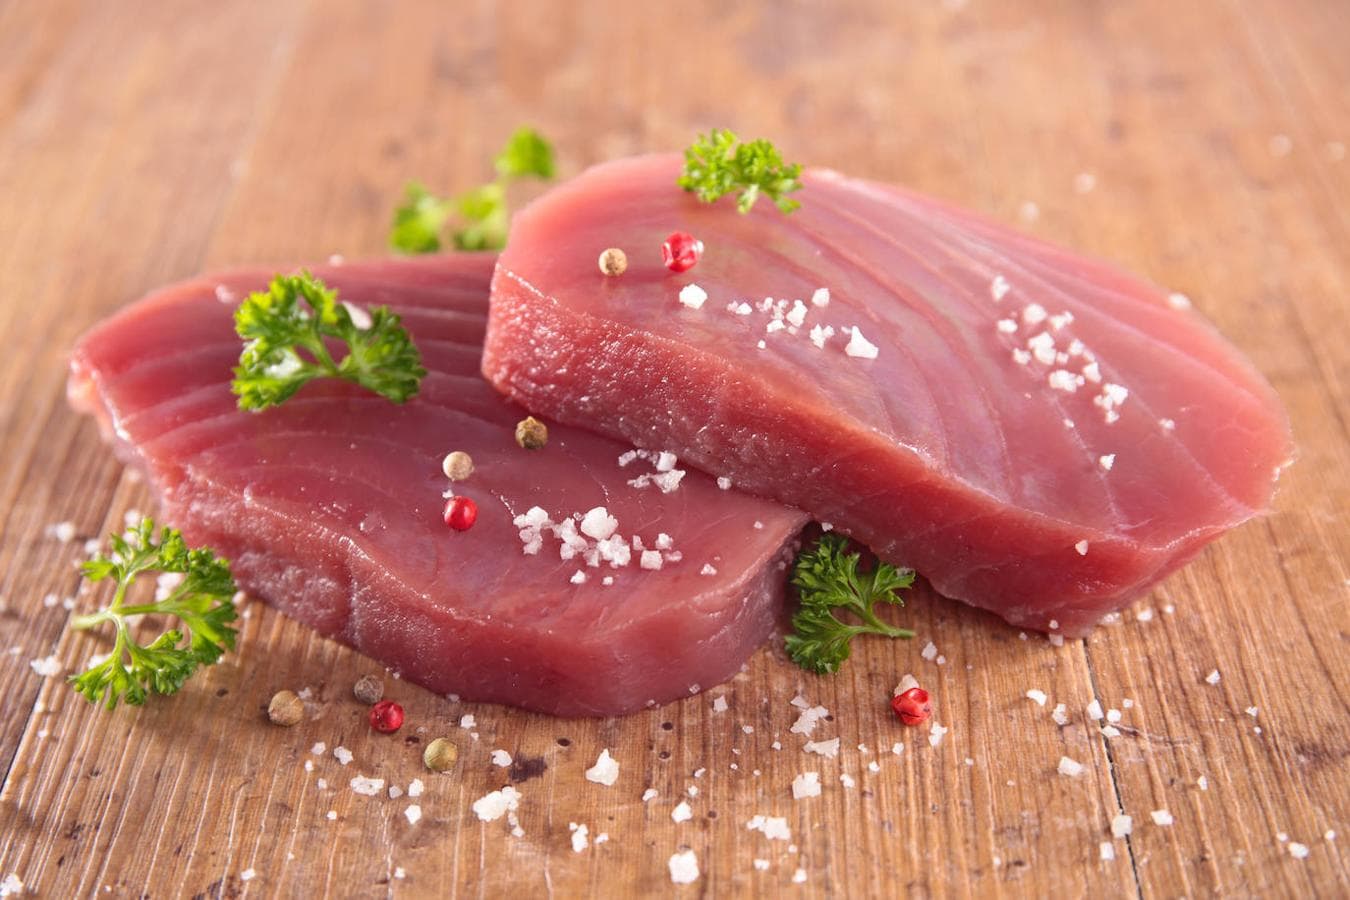 Atún. El <a href="https://www.abc.es/bienestar/alimentacion/abci-atun-202101211150_noticia.html">atún</a> es otro pescado excelente para aportar ácidos grasos omega 3 a nuestros menús. Además, este pescado tiene 22 gramos de proteína por cada 100 de producto, según datos de la Bedca. Al igual que el salmón es destacable su aporte de potasio: 400 microgramos por cada 100 gramos. Nos interesa, asimismo por el aporte de fósforo y calcio a la dieta, todos nutrientes muy importantes.